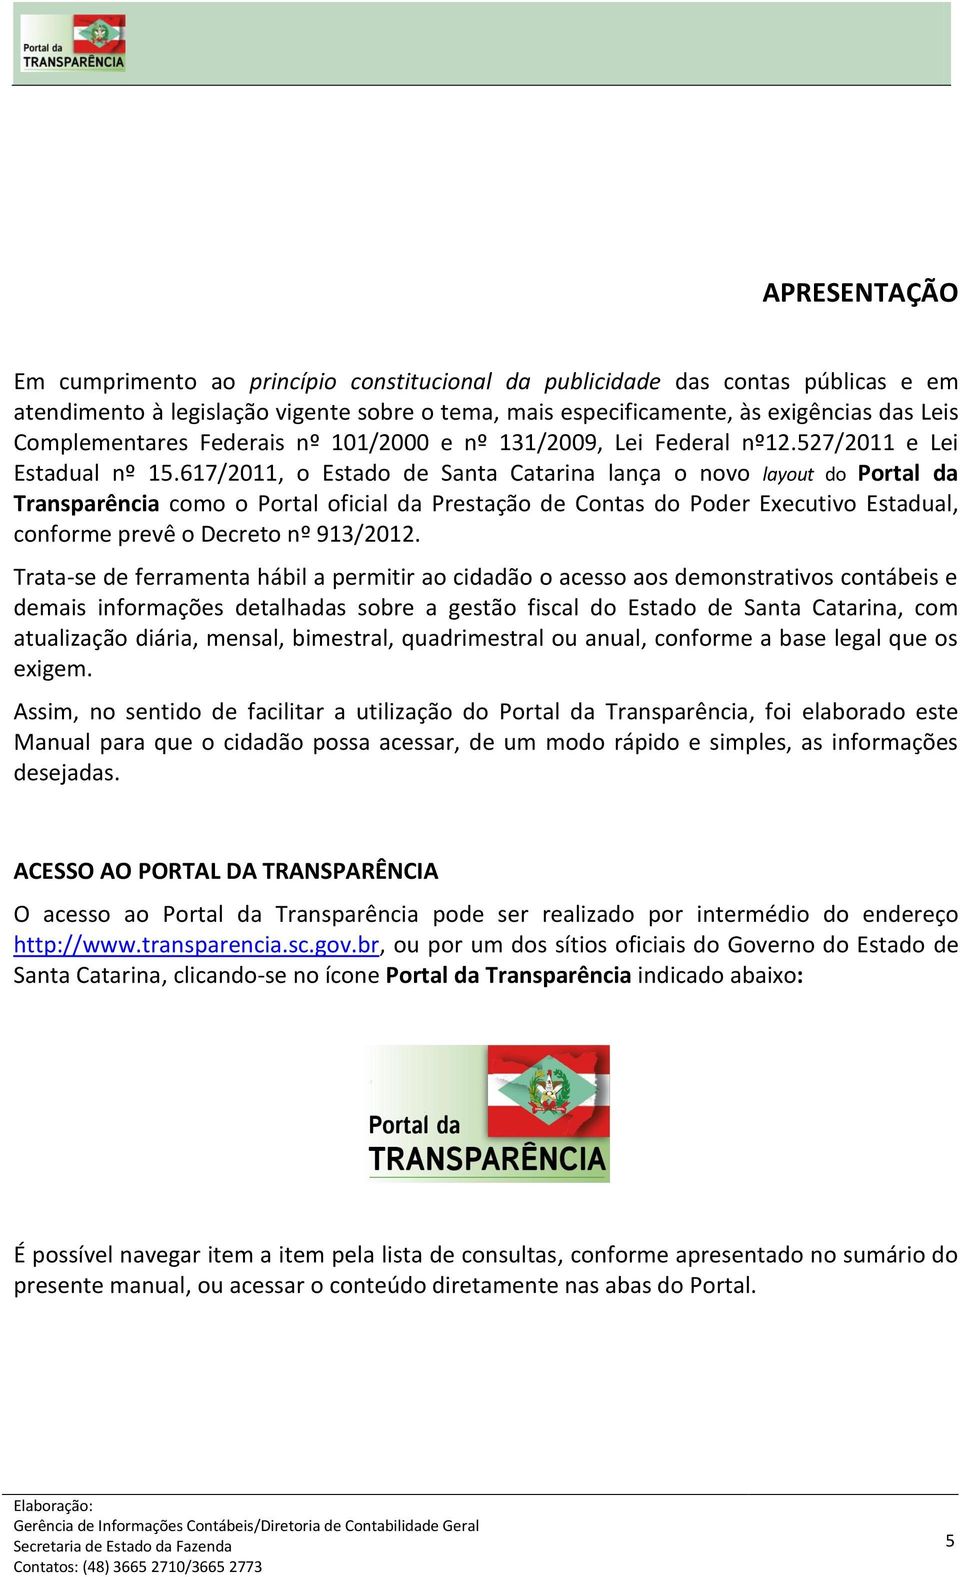 617/2011, o Estado de Santa Catarina lança o novo layout do Portal da Transparência como o Portal oficial da Prestação de Contas do Poder Executivo Estadual, conforme prevê o Decreto nº 913/2012.